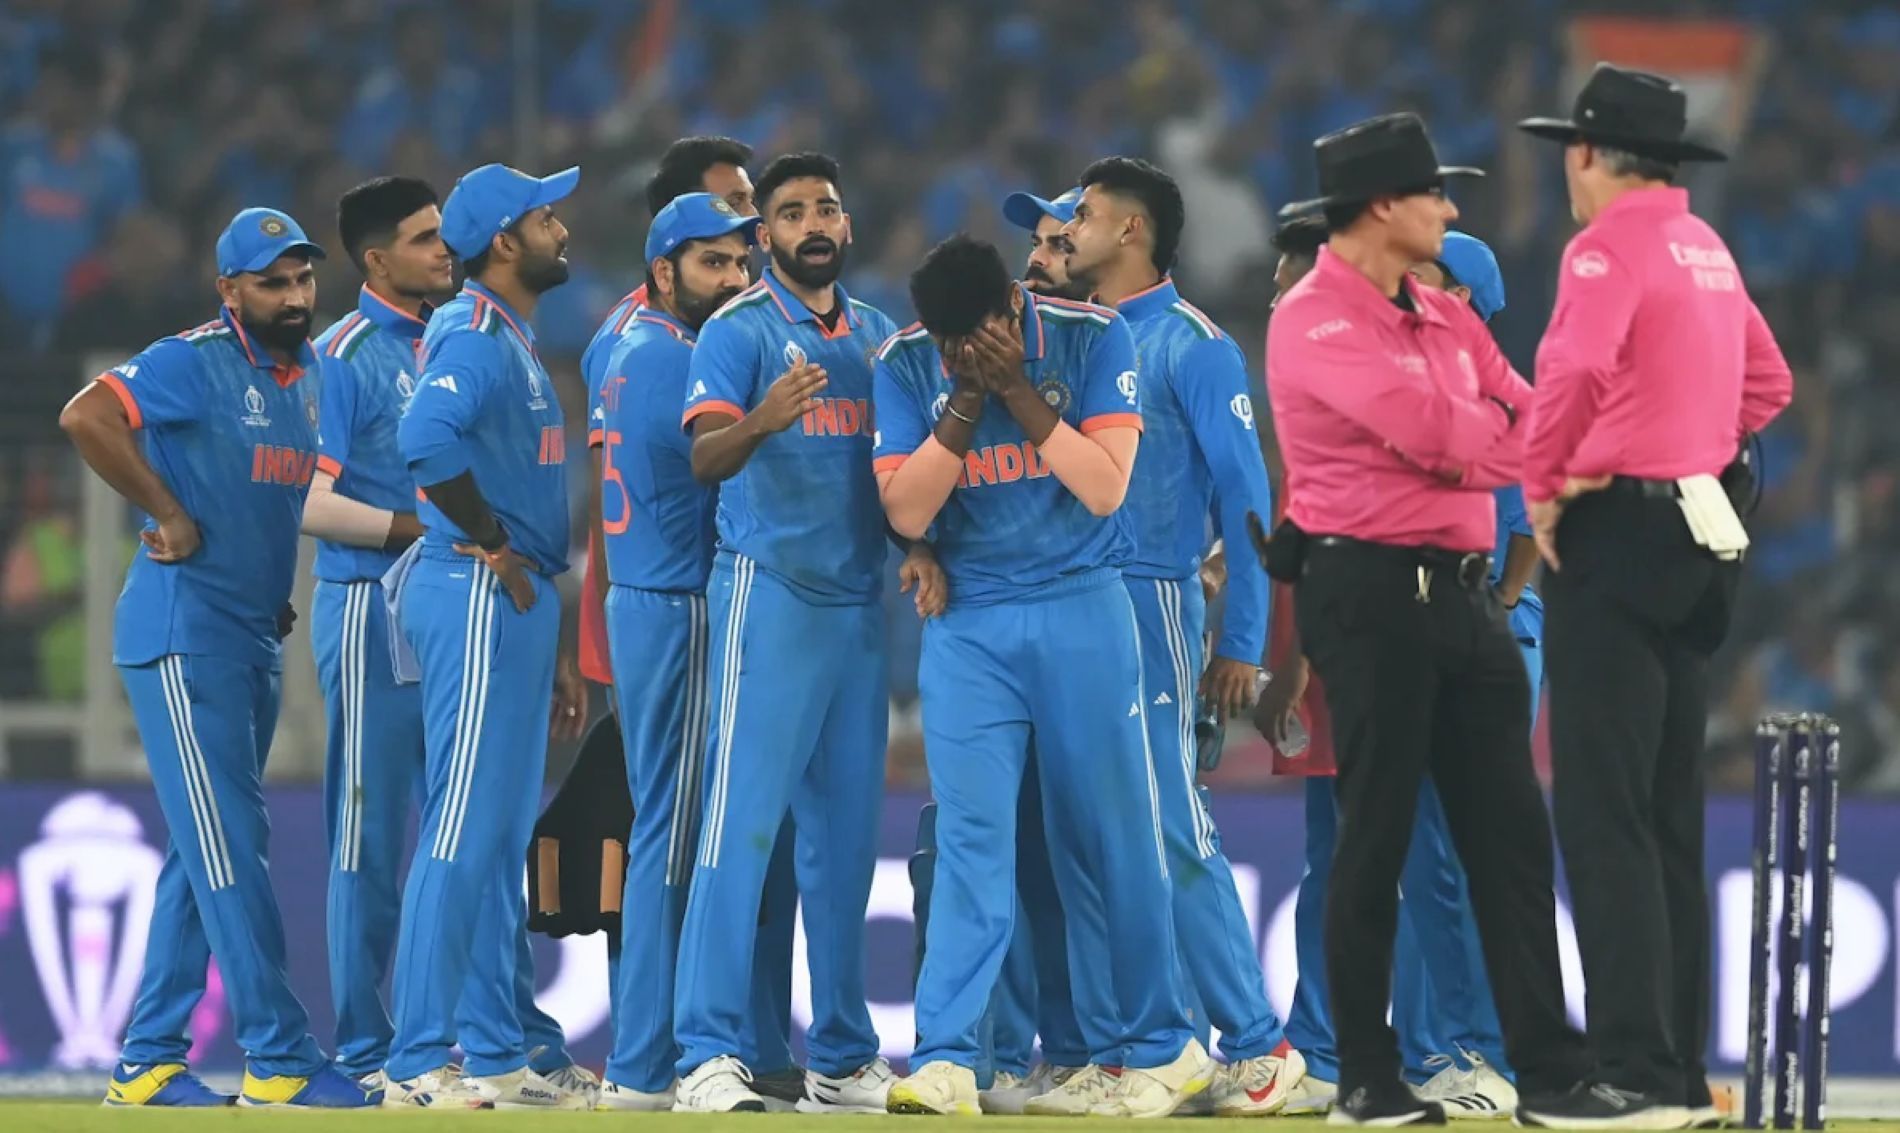 Team India stumbled on the biggest stage against Australia.